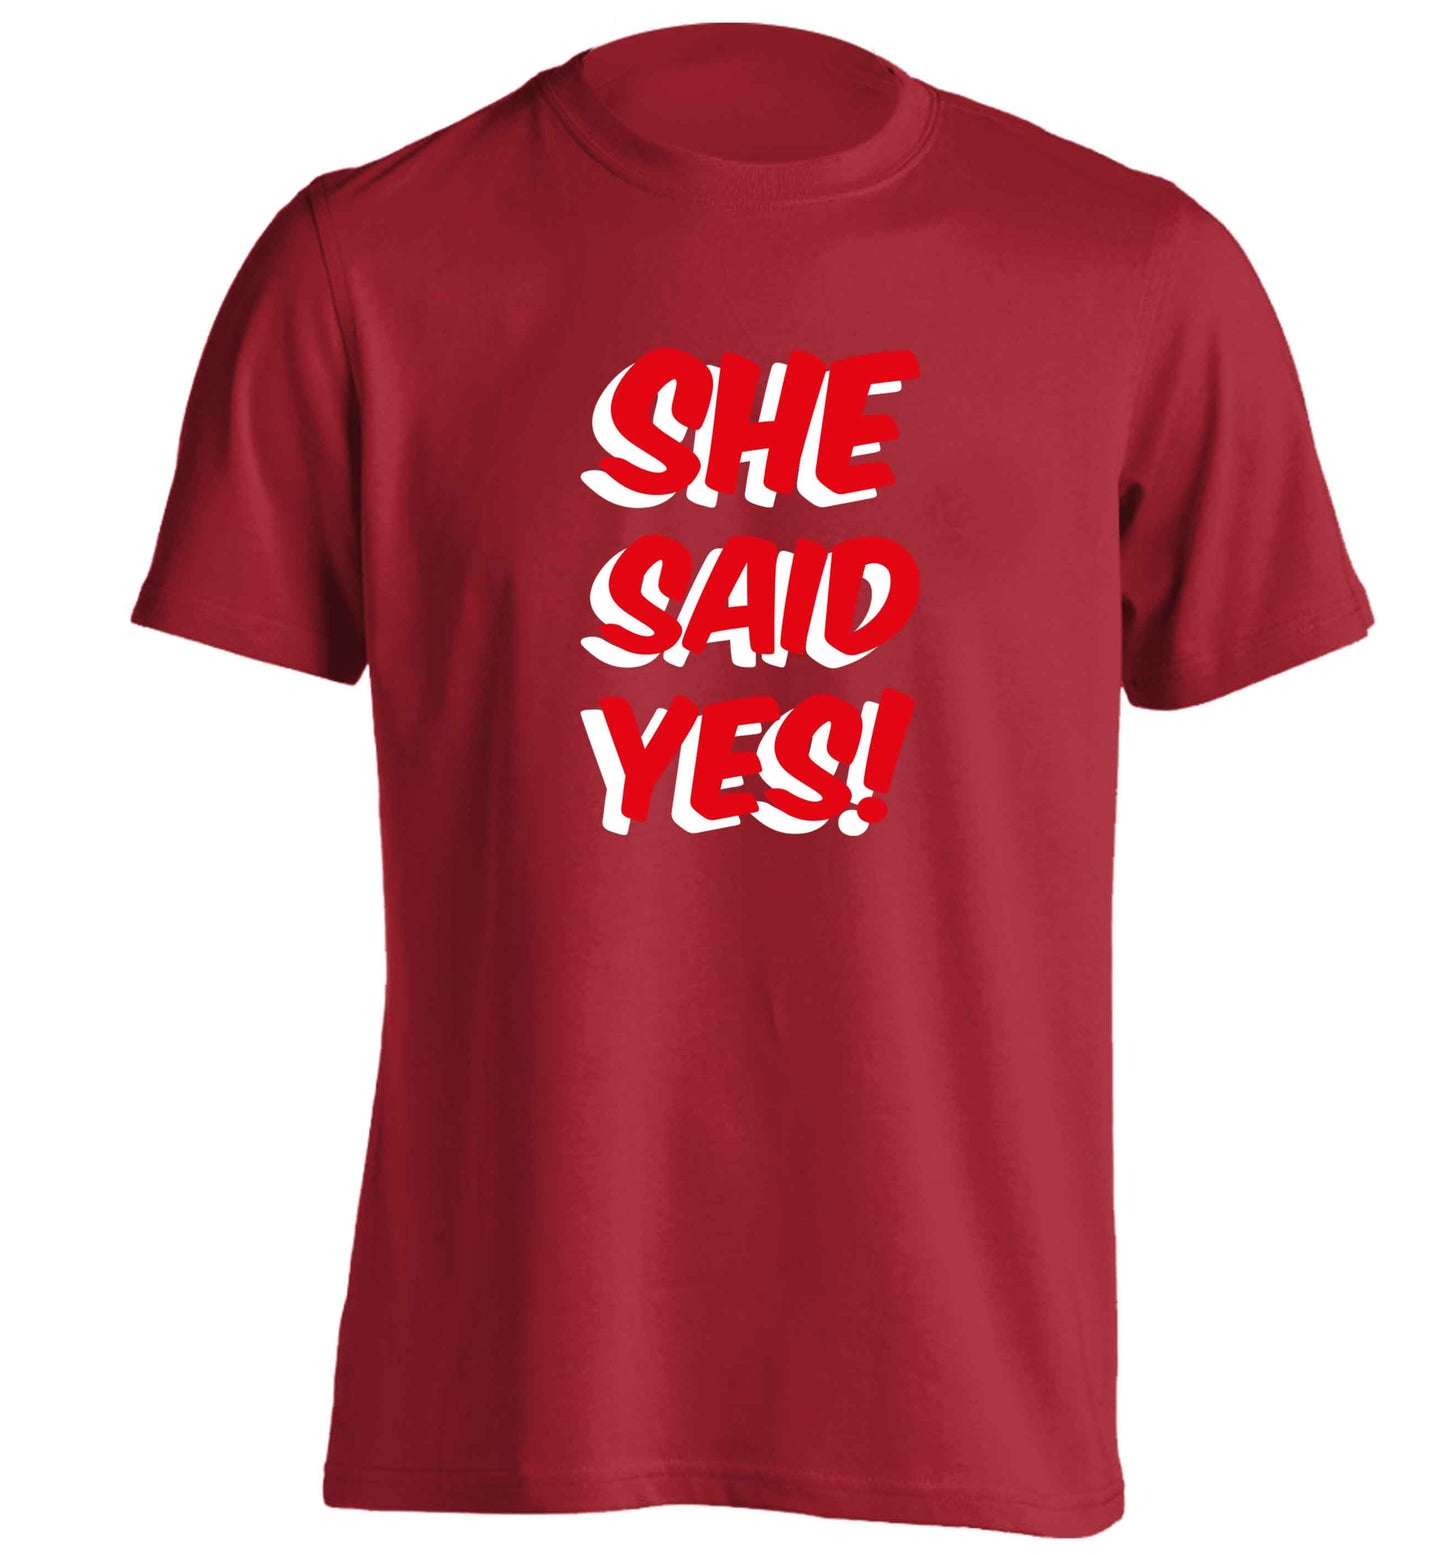 She said yes adults unisex red Tshirt 2XL